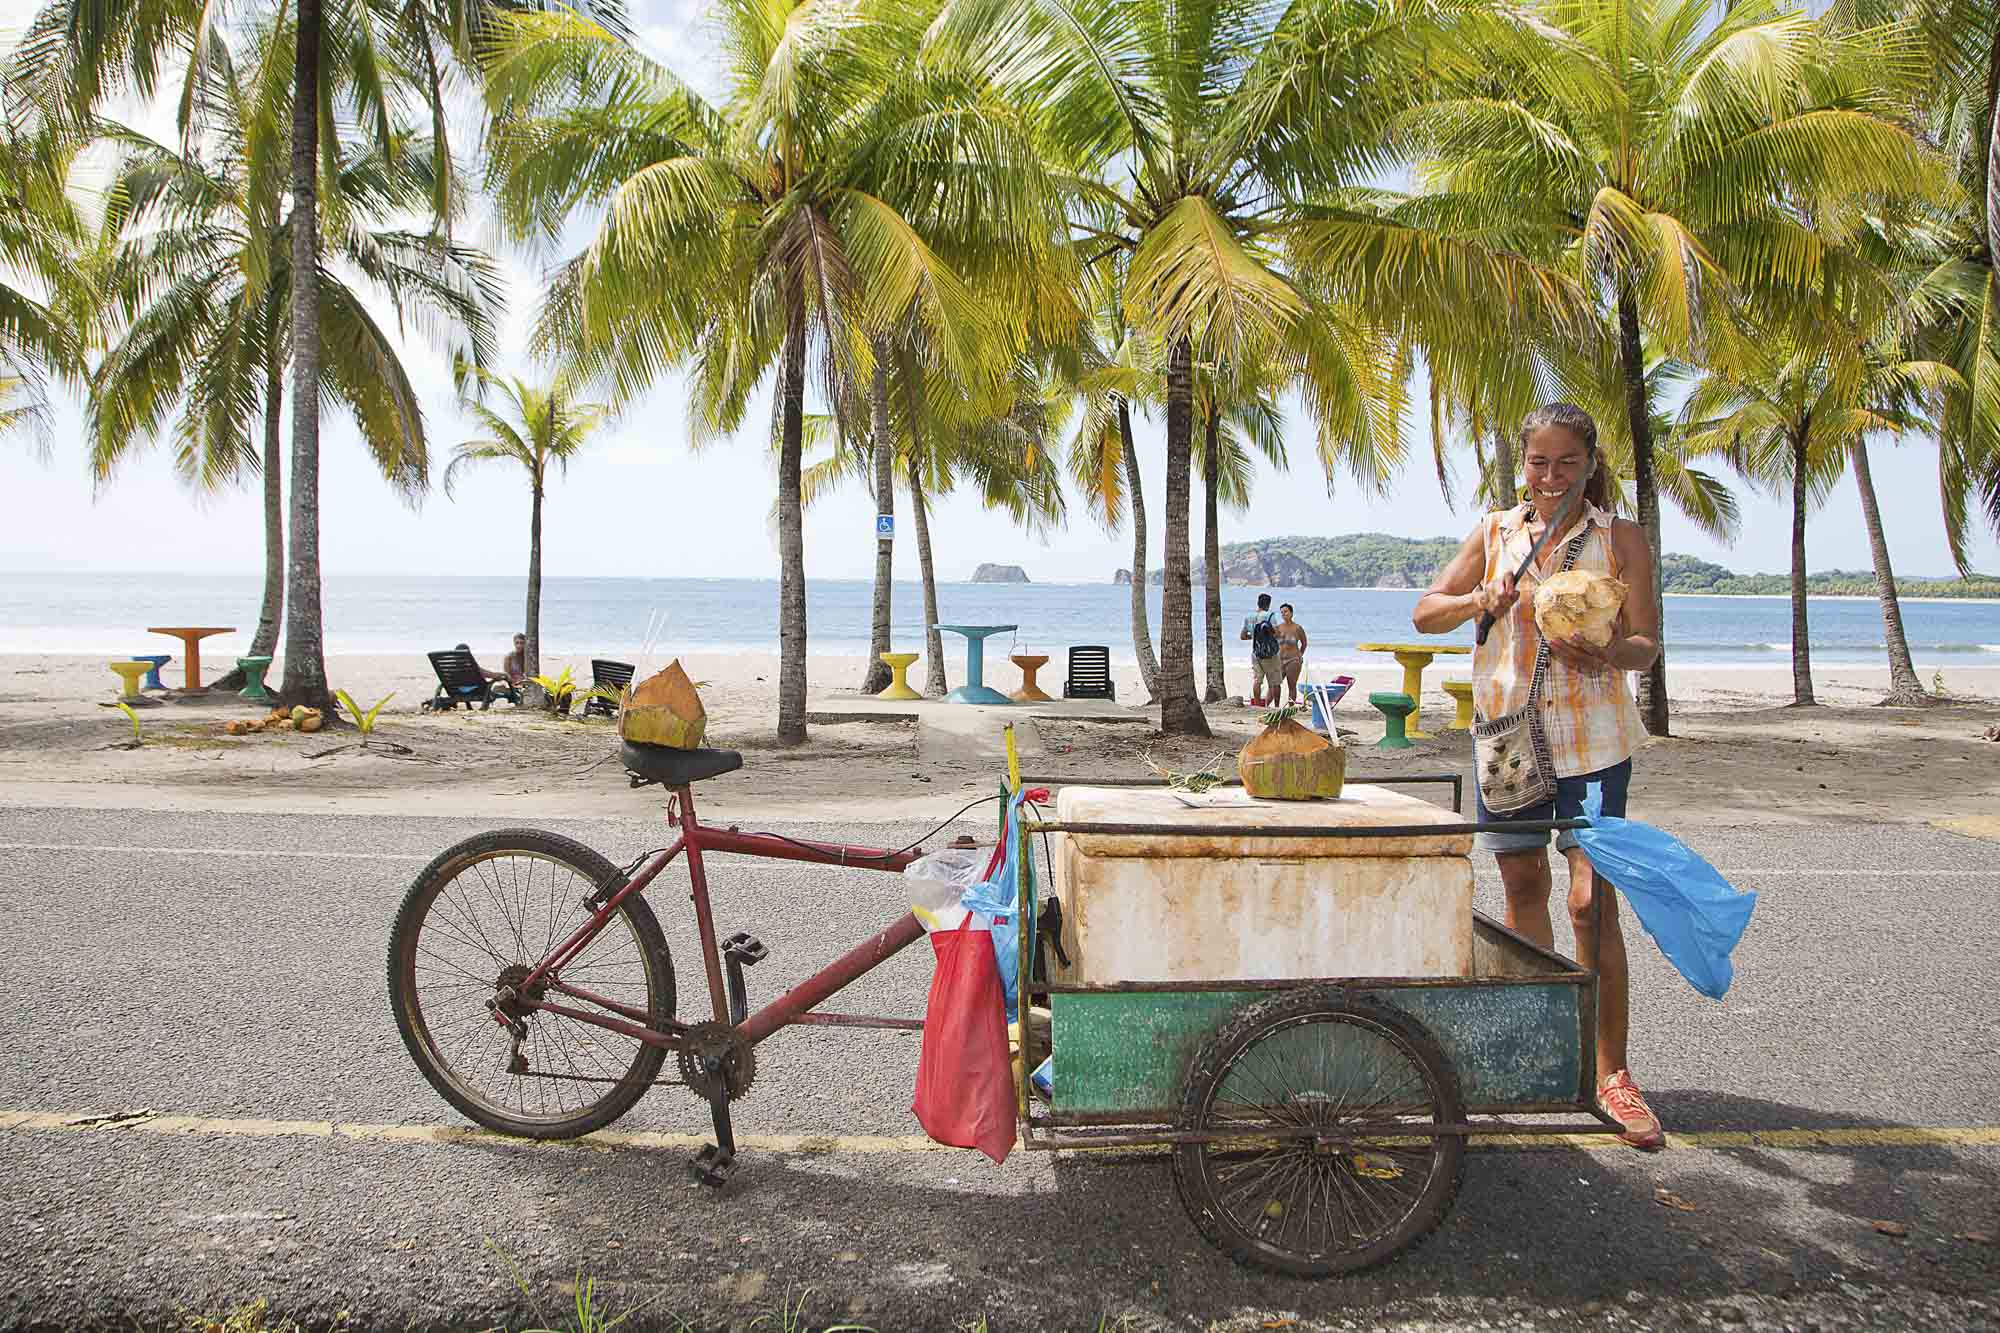 Costa Rica, Provinz Guanacaste, Samara, Playa Carillo, ambulante Händlerin verkauft Kokosnussmilch, zwischen Palmen am Strand